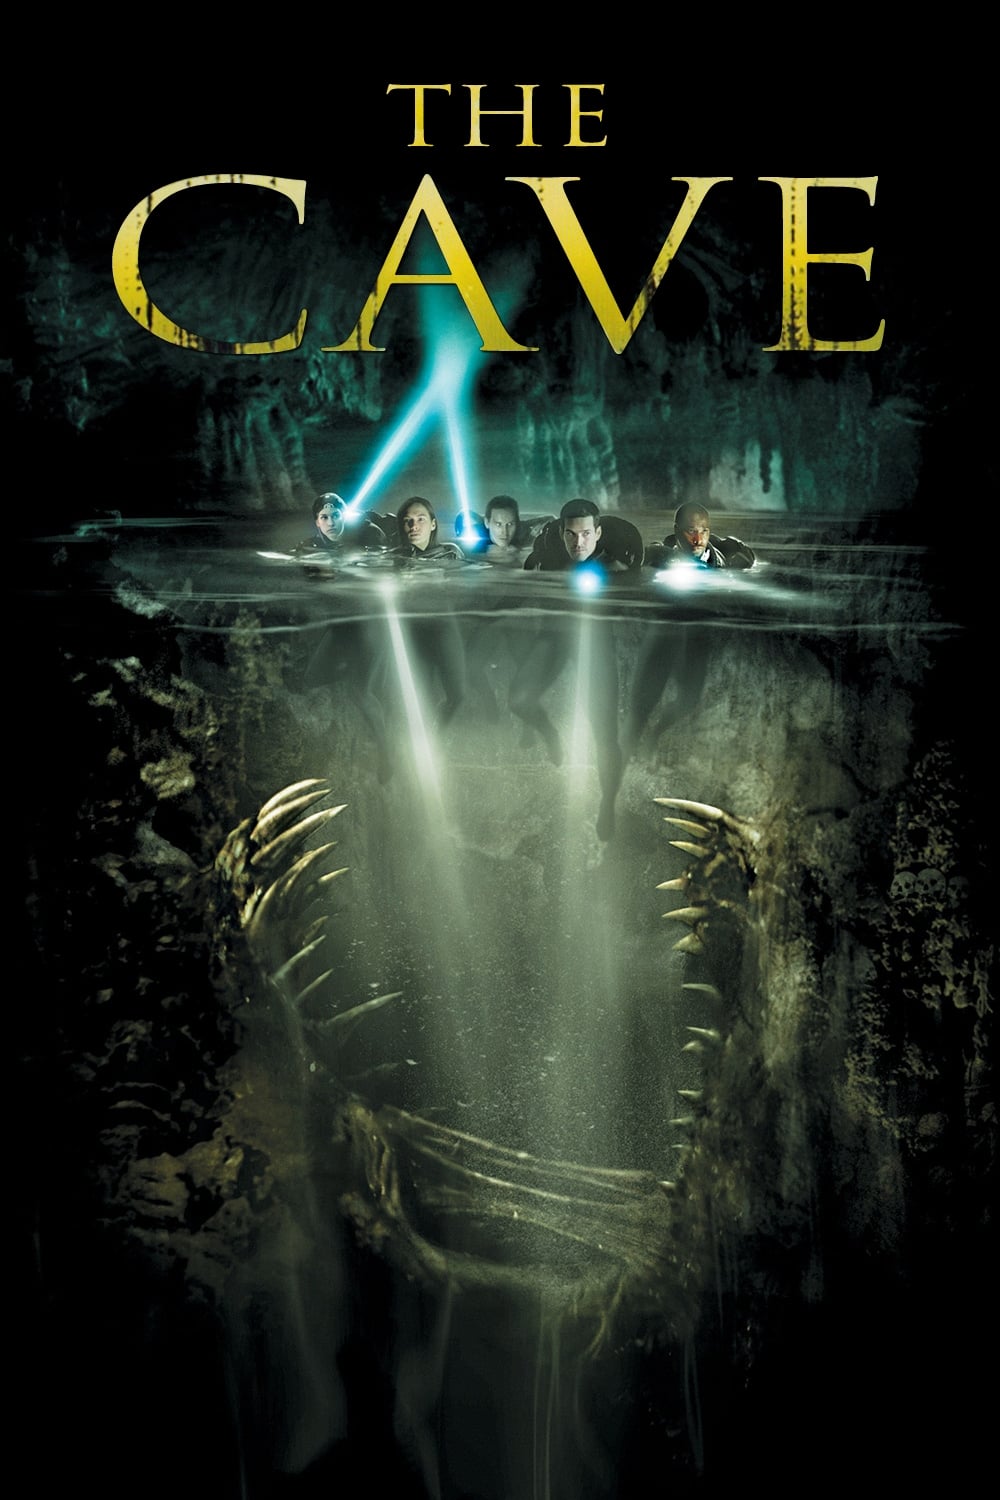 Пещерата